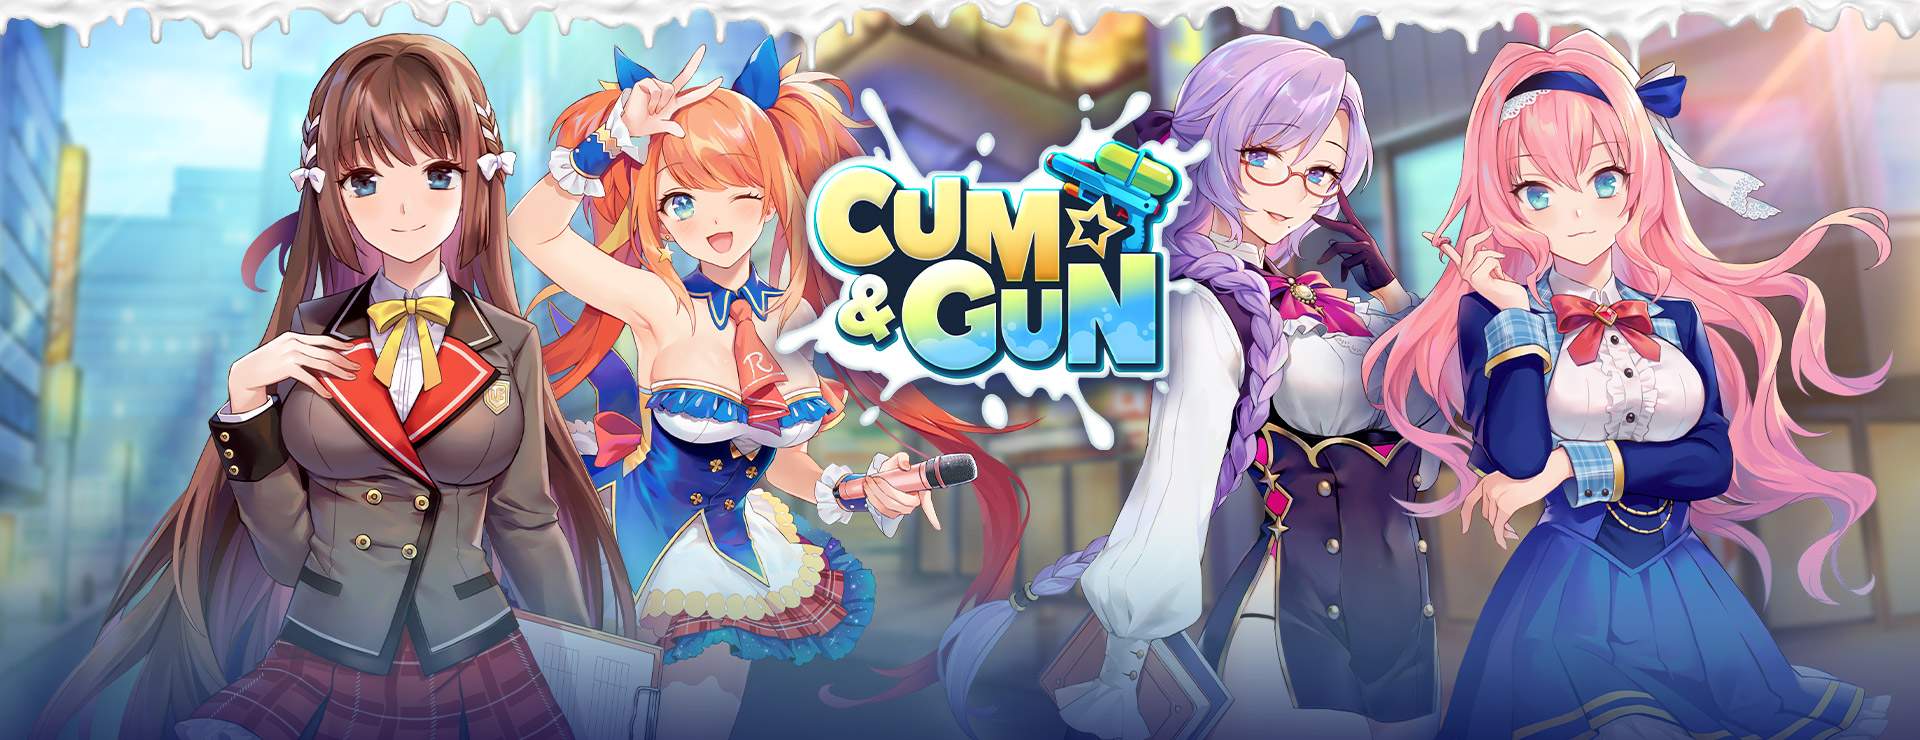 Cum & Gun - Action Adventure Spiel